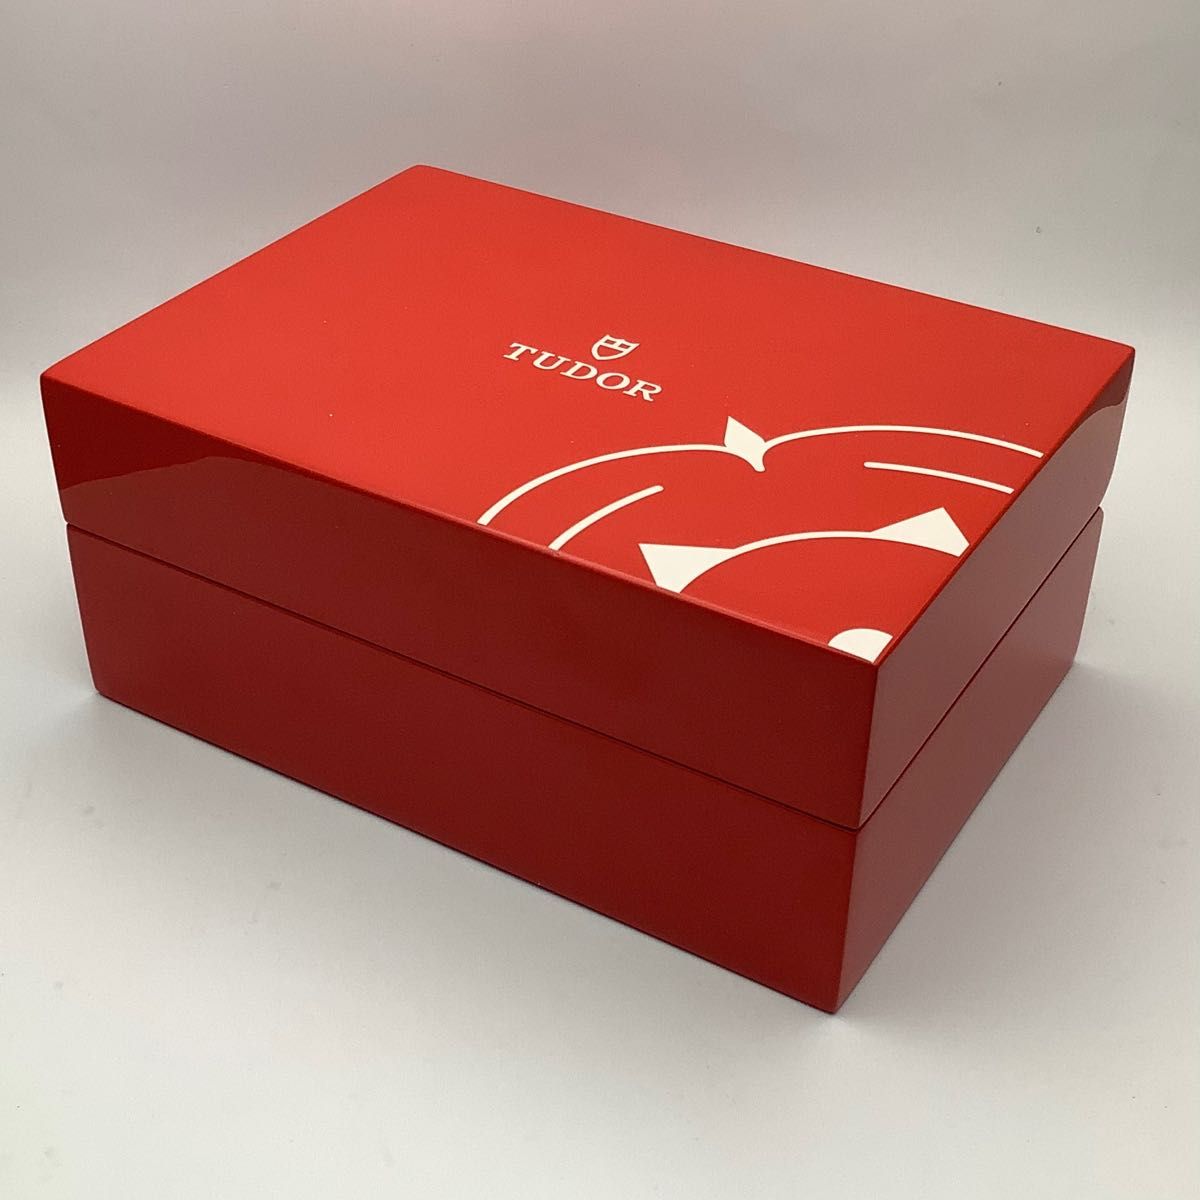 超希少 正規品 TUDOR チュードル チューダー 薔薇 純正 ボックス BOX 箱 ヴィンテージ アンティーク 腕時計 保存箱